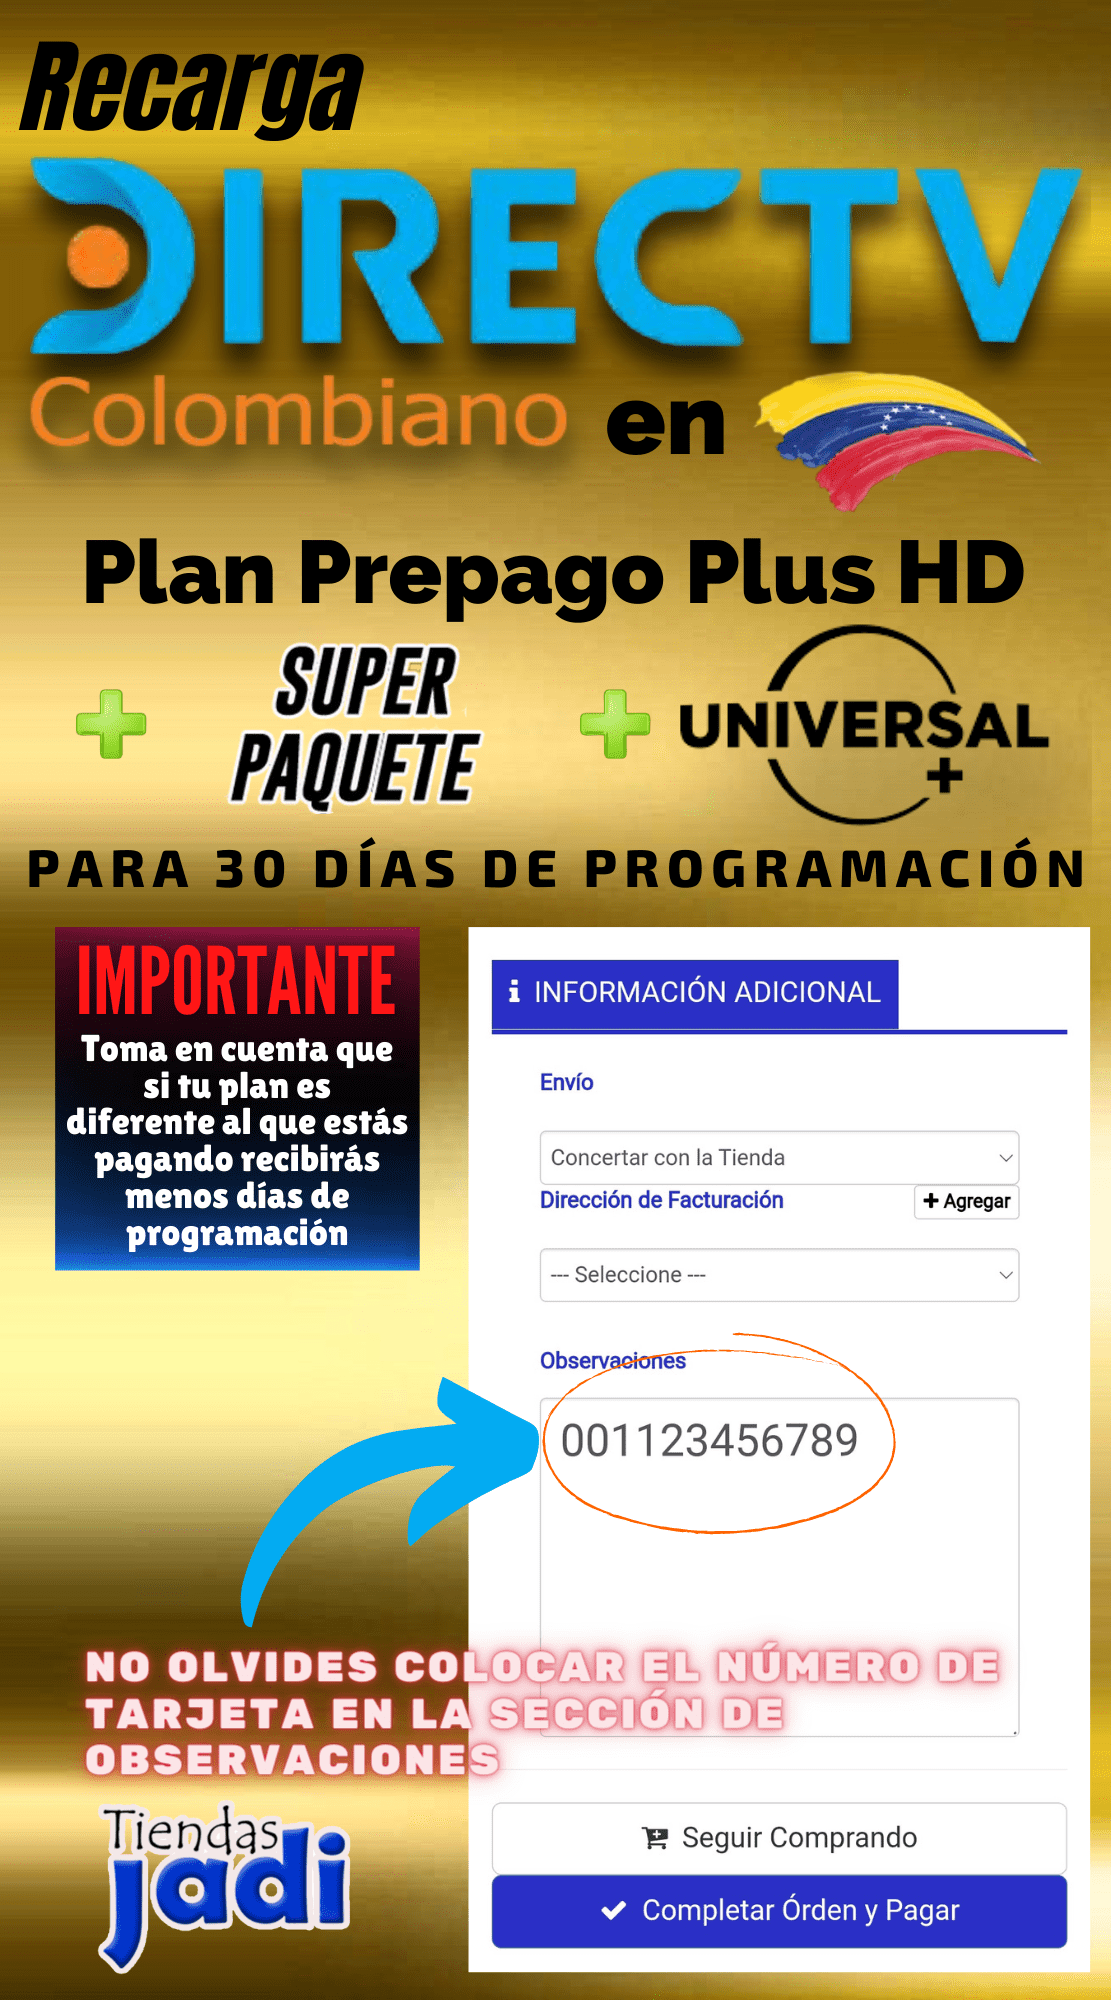 Recargar Directv Colombiano en Venezuela Plan Basico + Super Paquete + UNIVERSAL 30 Dias de Programa